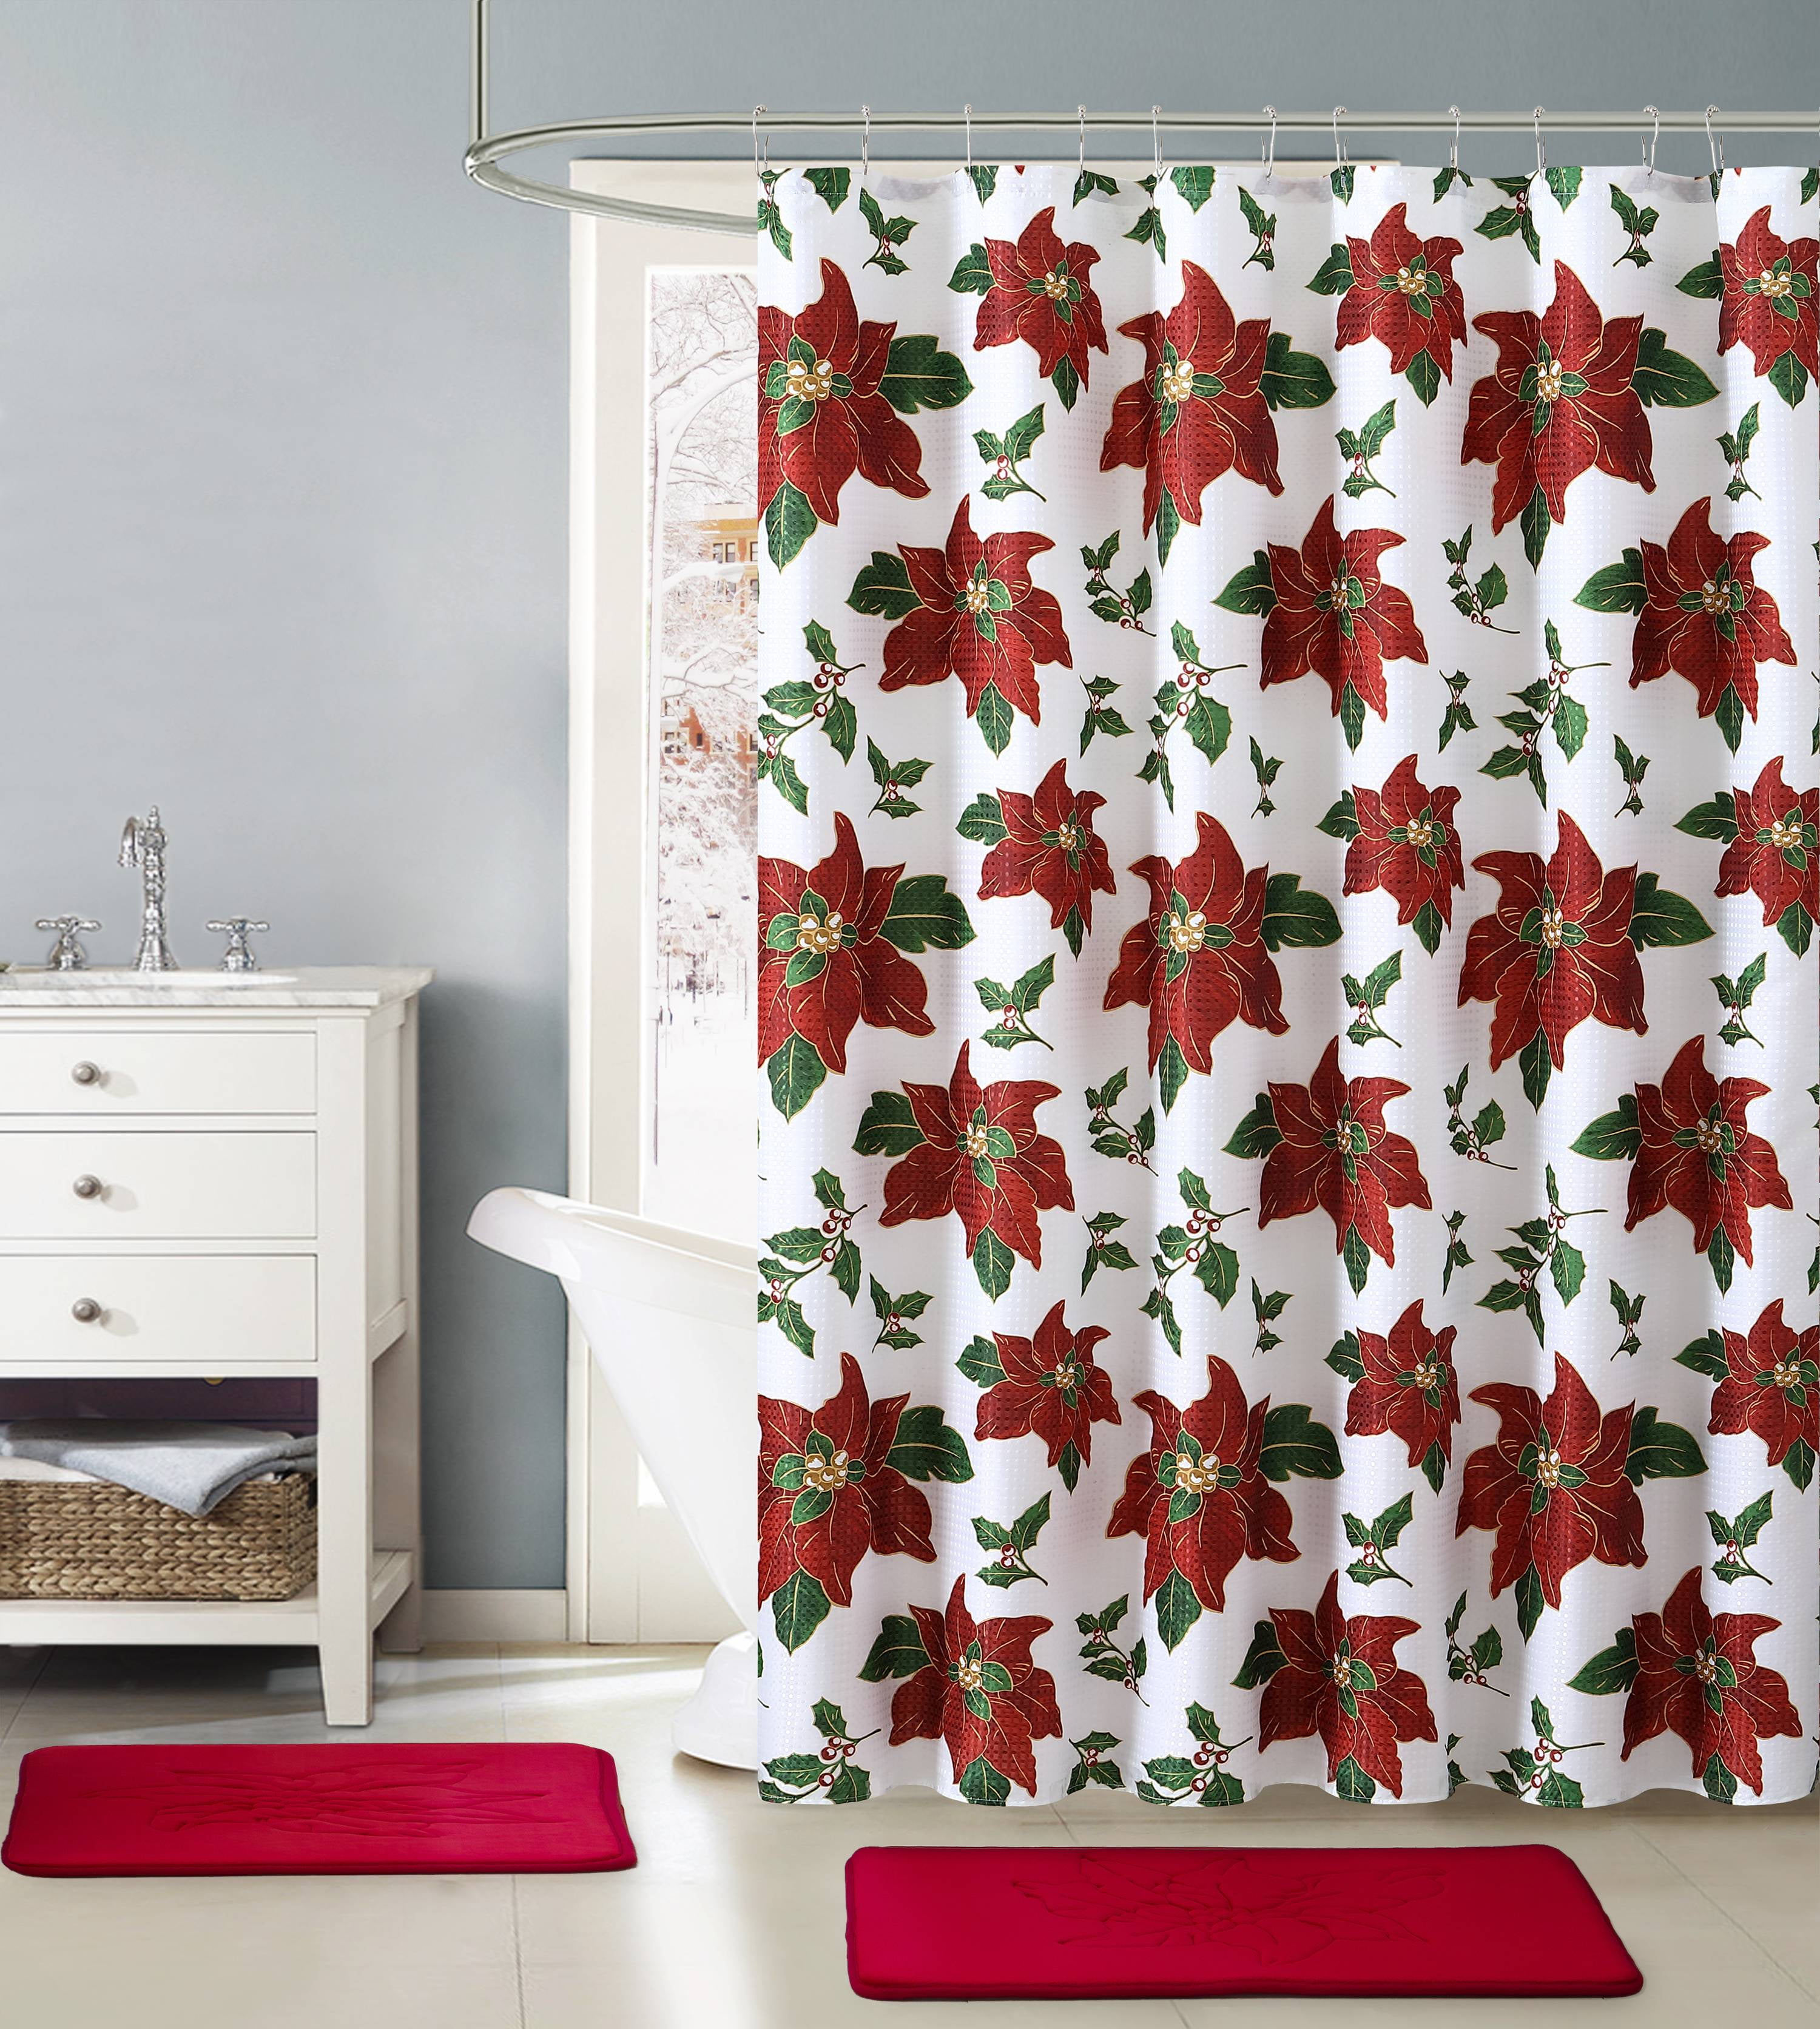 VCNY Home Poisettia Bloom Christmas Fabric Shower Curtain - Standard ...